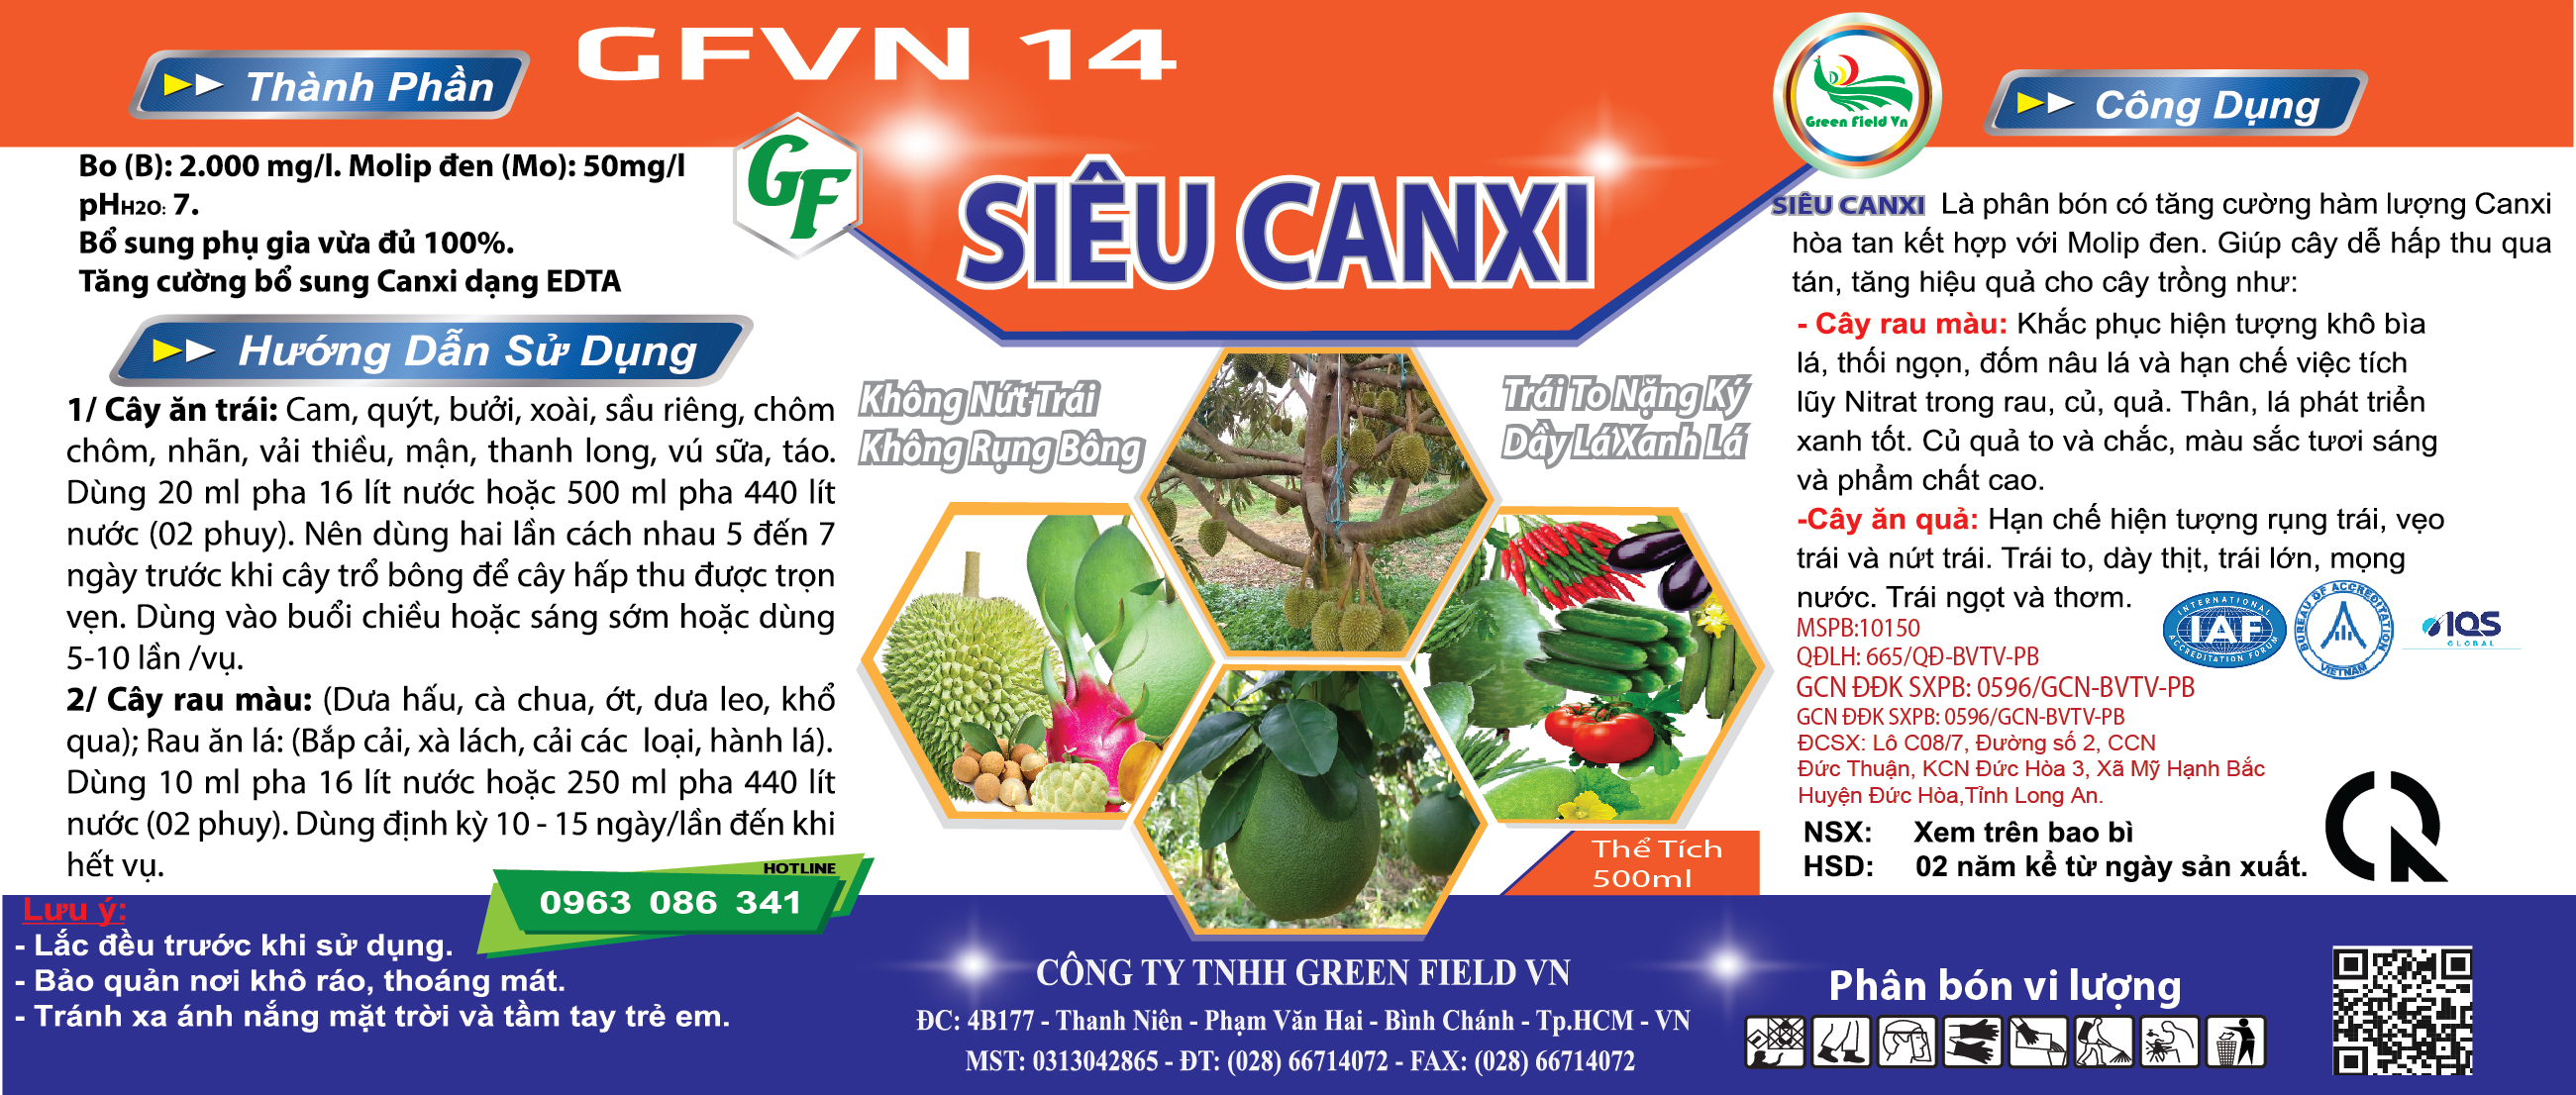 SIÊU CANXI - GFVN 14